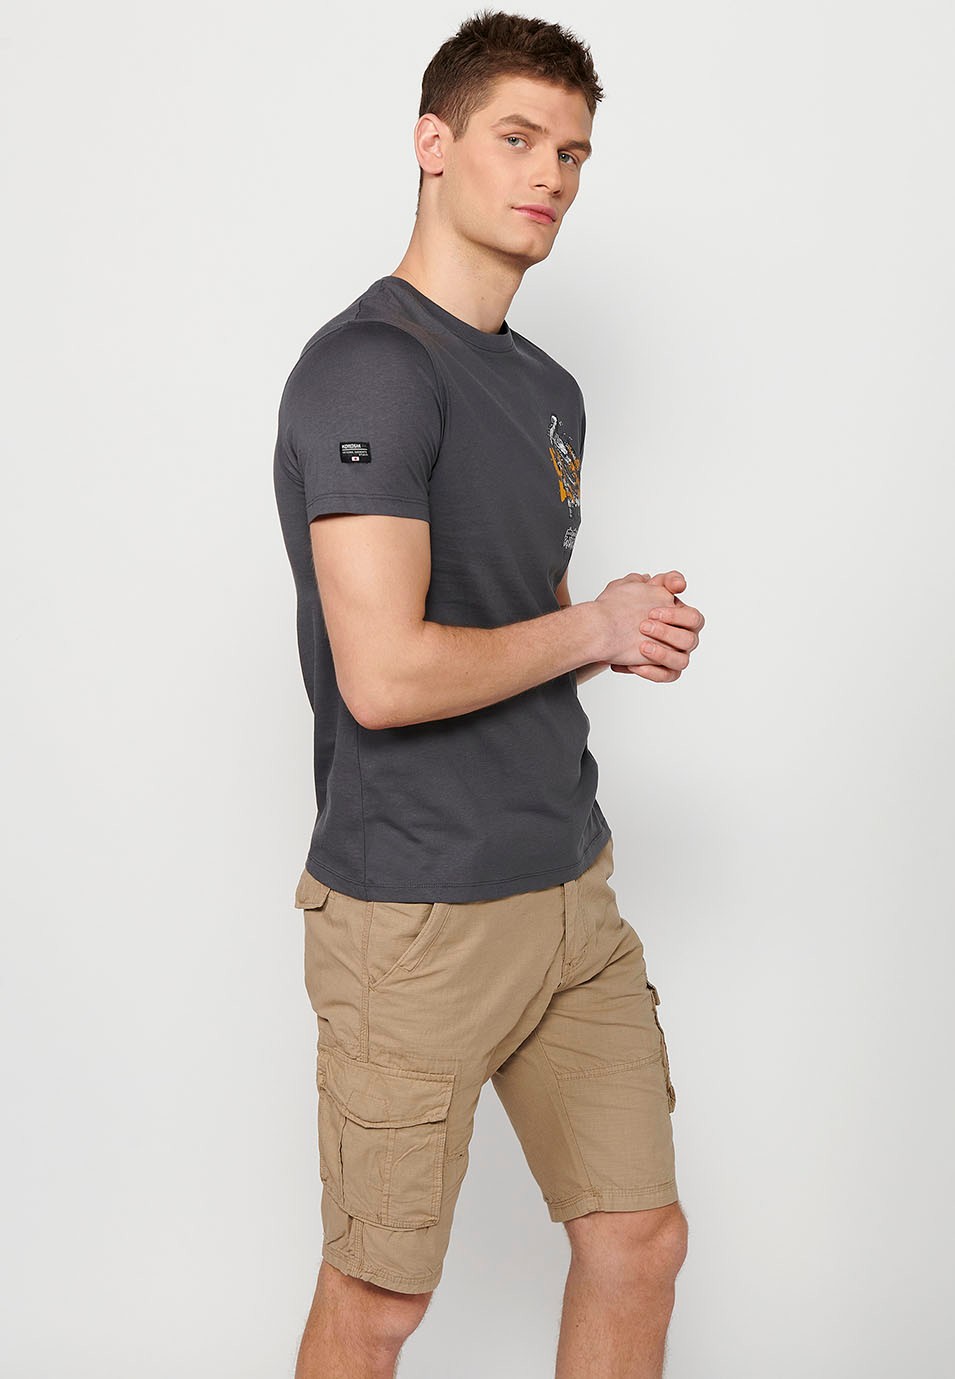 Camiseta de manga corta de algodon, estampada en la espalda, color gris para hombre